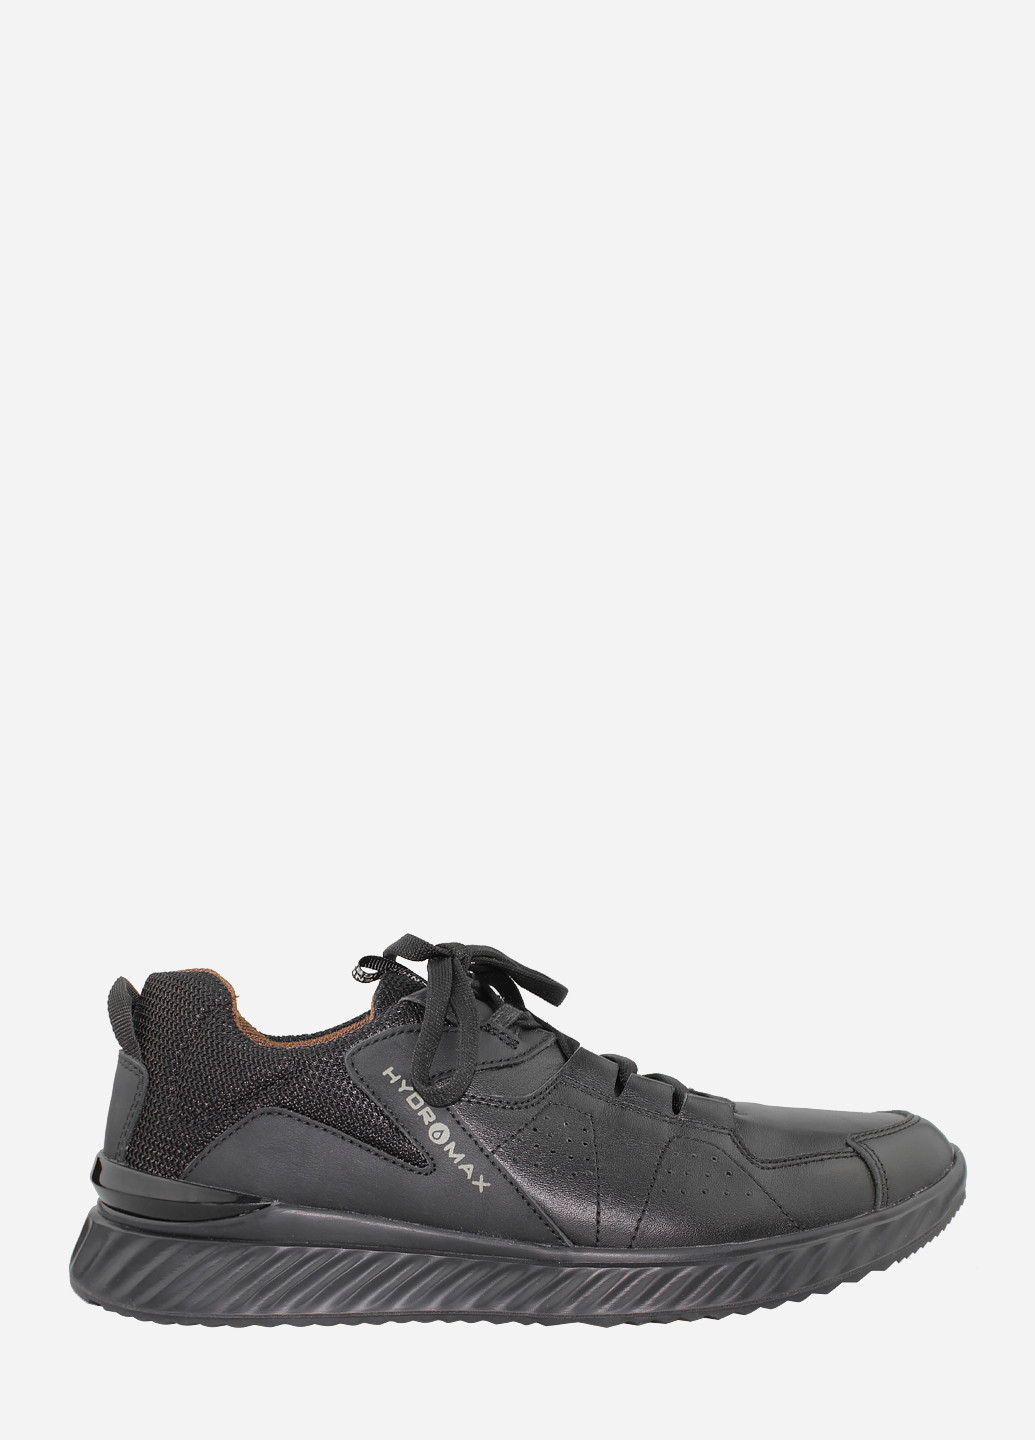 Чорні Осінні кросівки 22-003 чорний Nivas